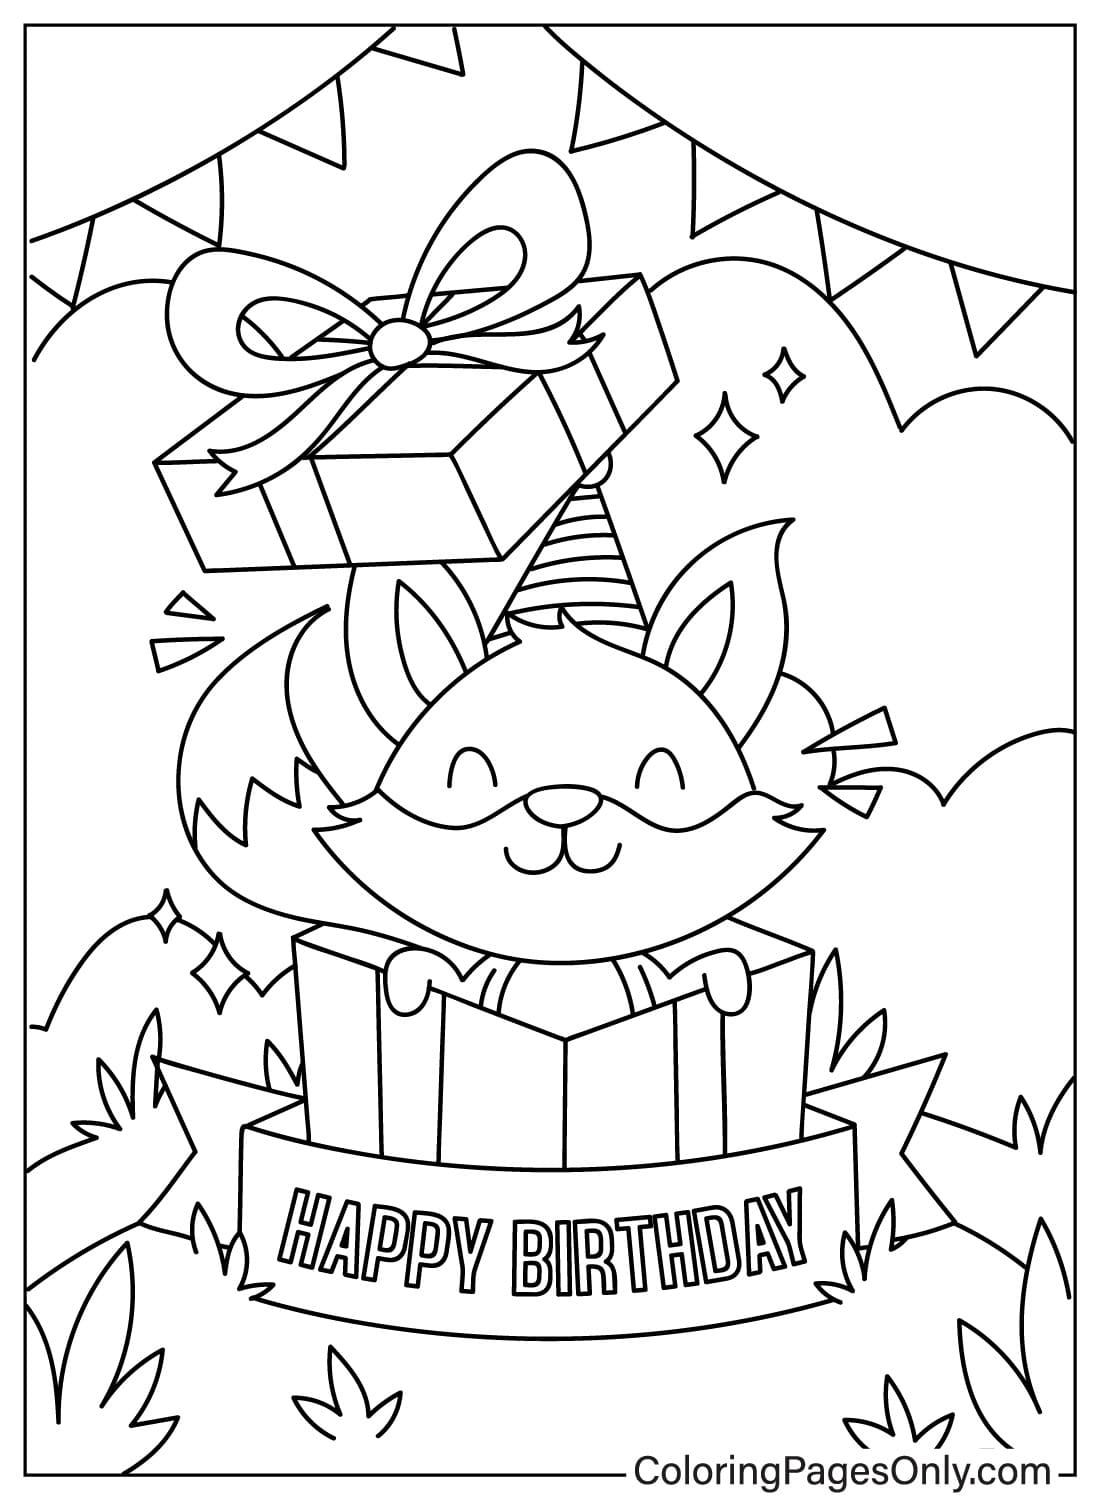 Images de cartes de joyeux anniversaire à colorier à partir d'une carte de joyeux anniversaire